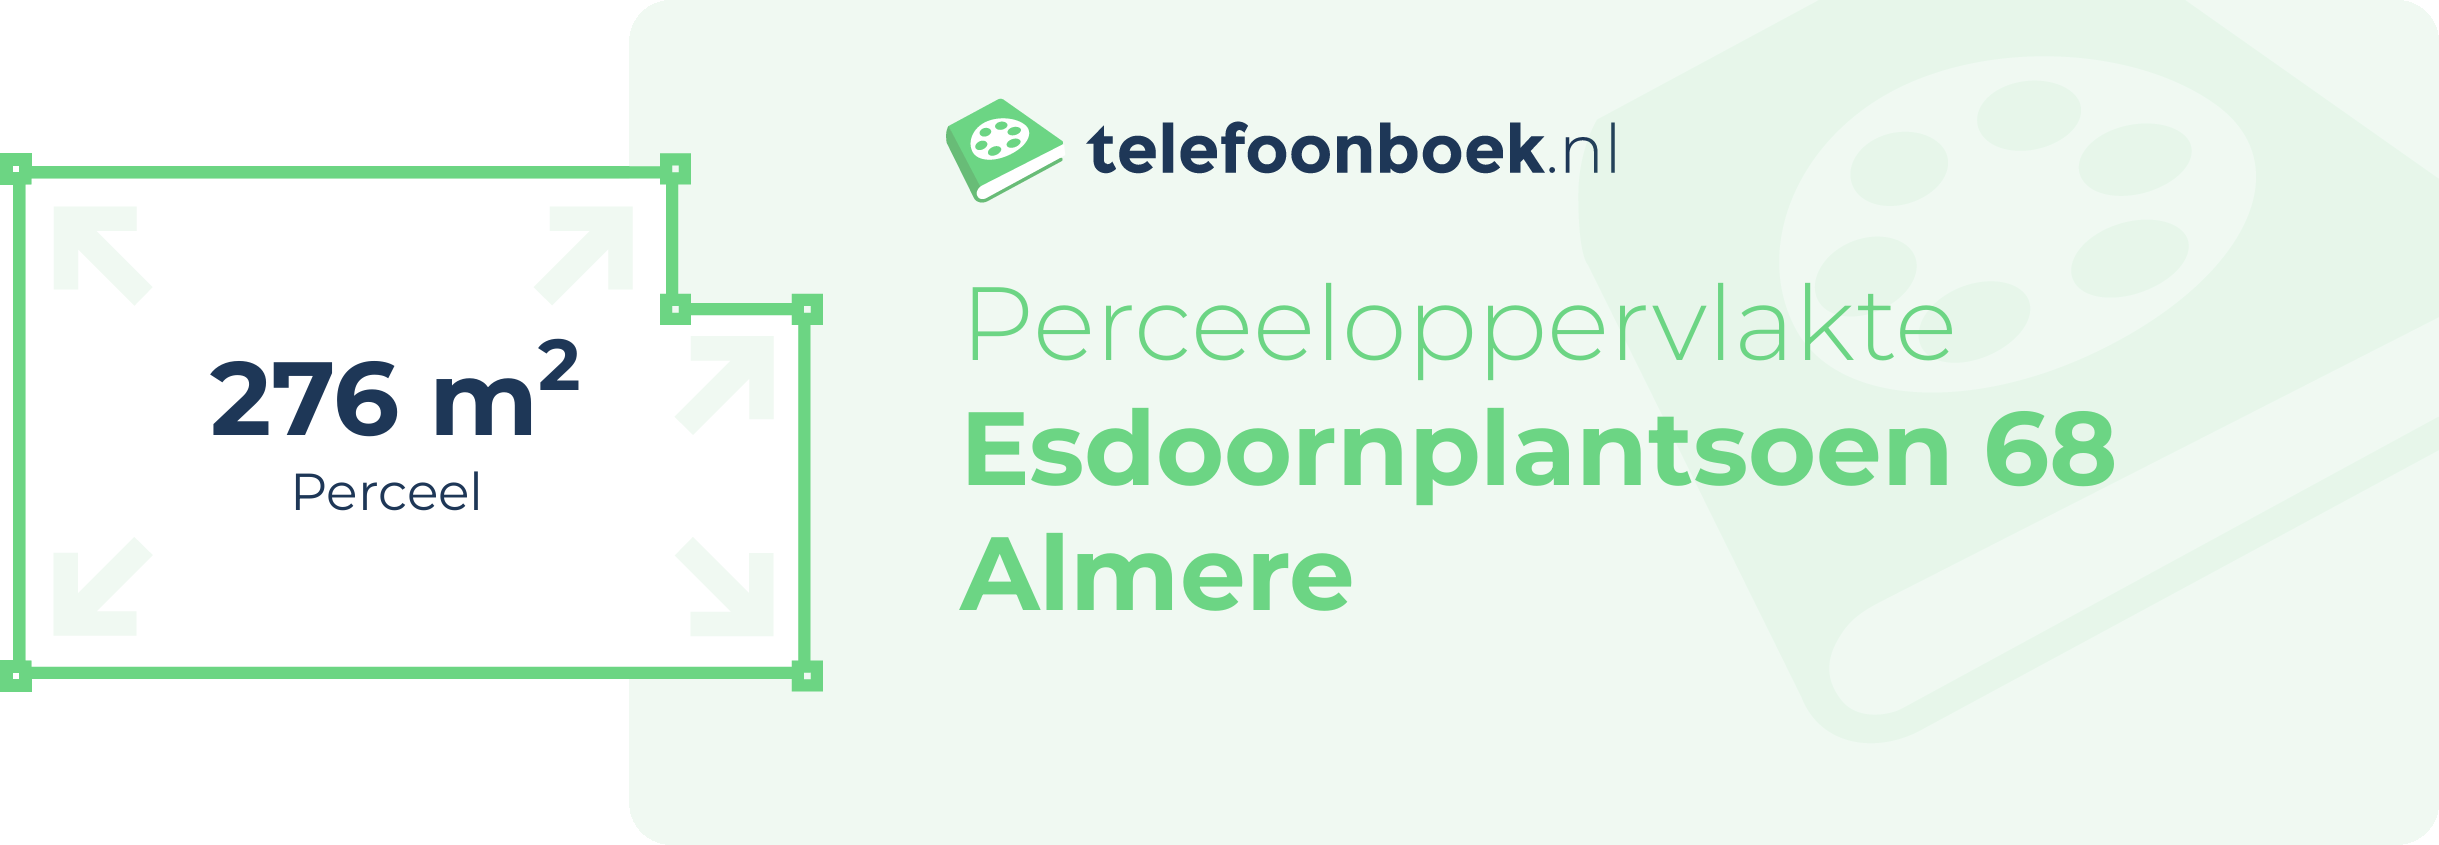 Perceeloppervlakte Esdoornplantsoen 68 Almere